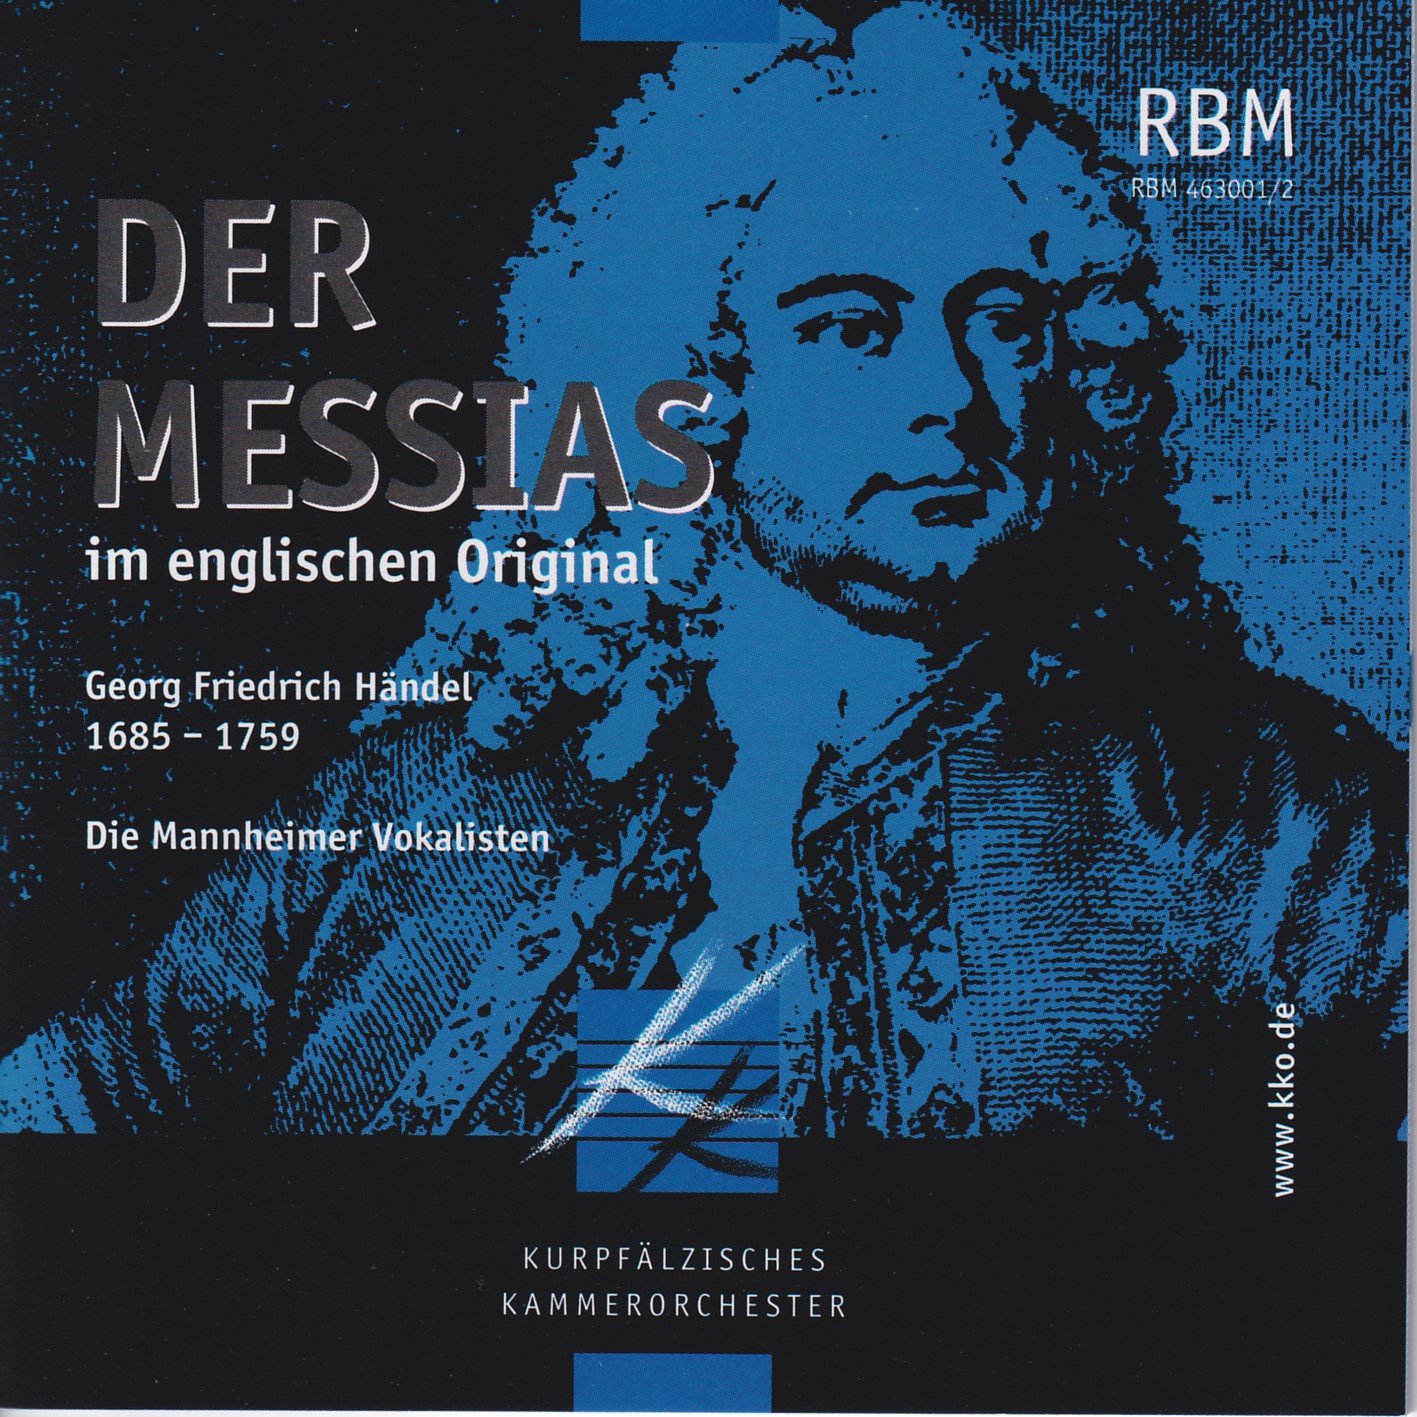 Georg Friedrich Händel - Messias im englischen Original